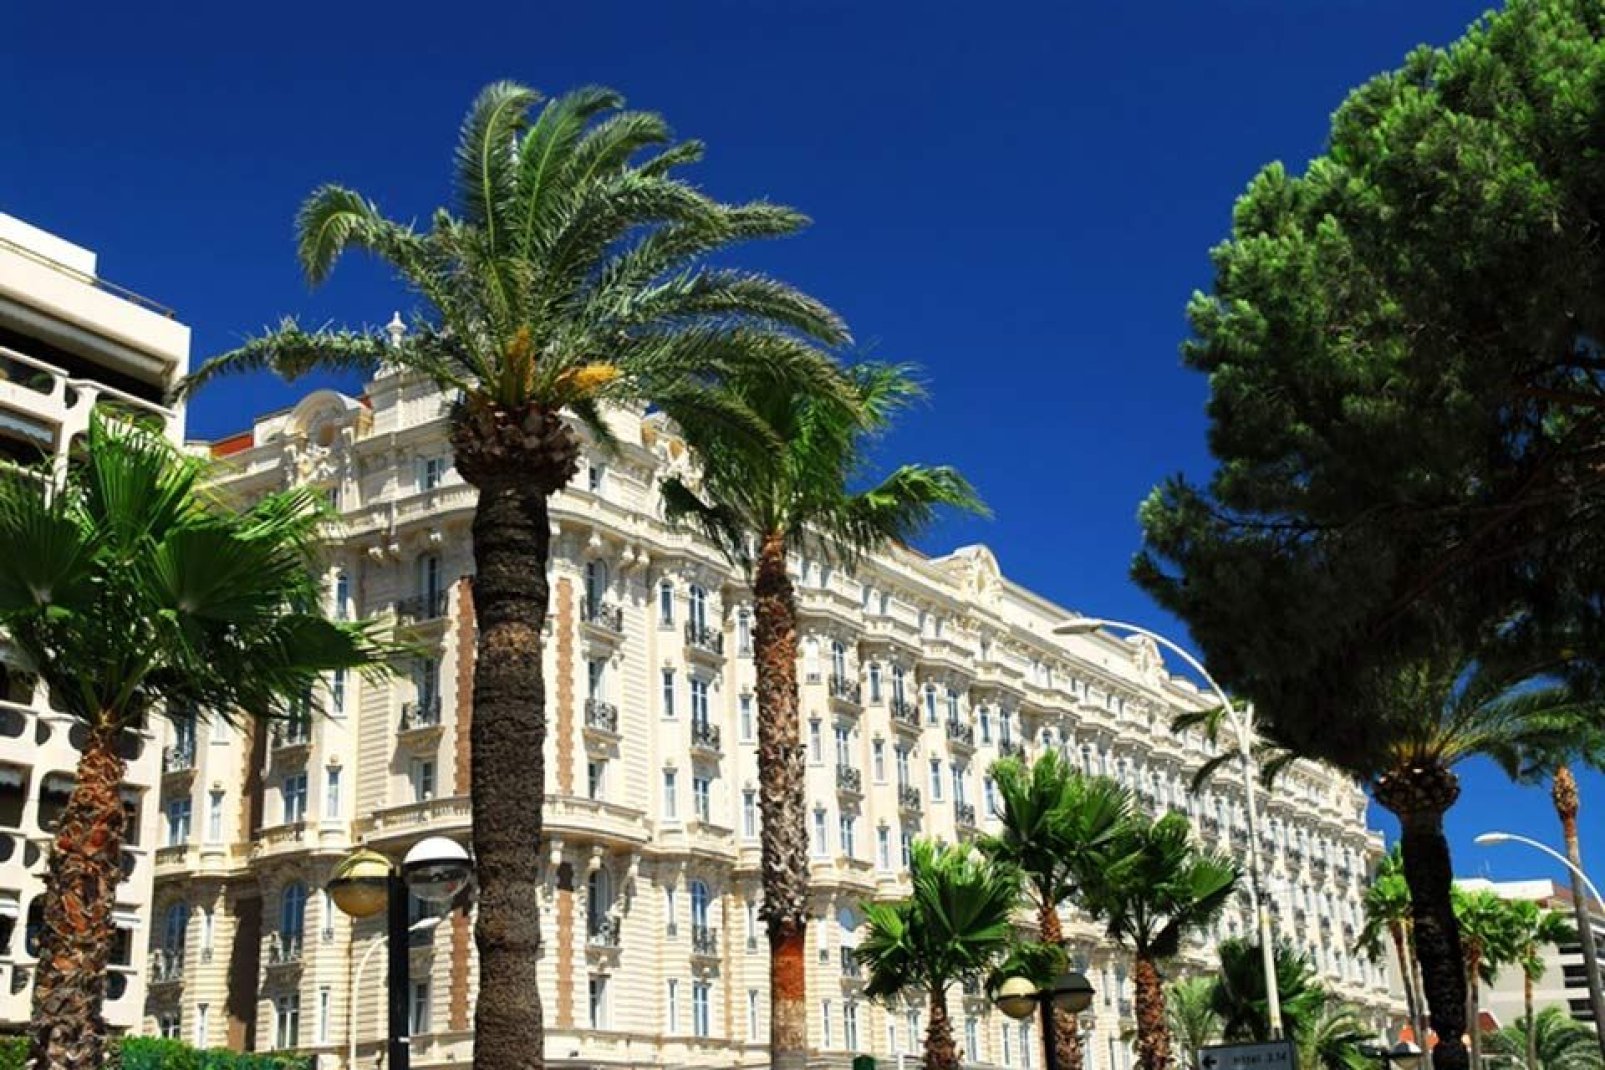 La passeggiata della Croisette è anche uno dei luoghi più chic della città e hotel di lusso come il Majestic o il Carlton vi hanno eletto domicilio.